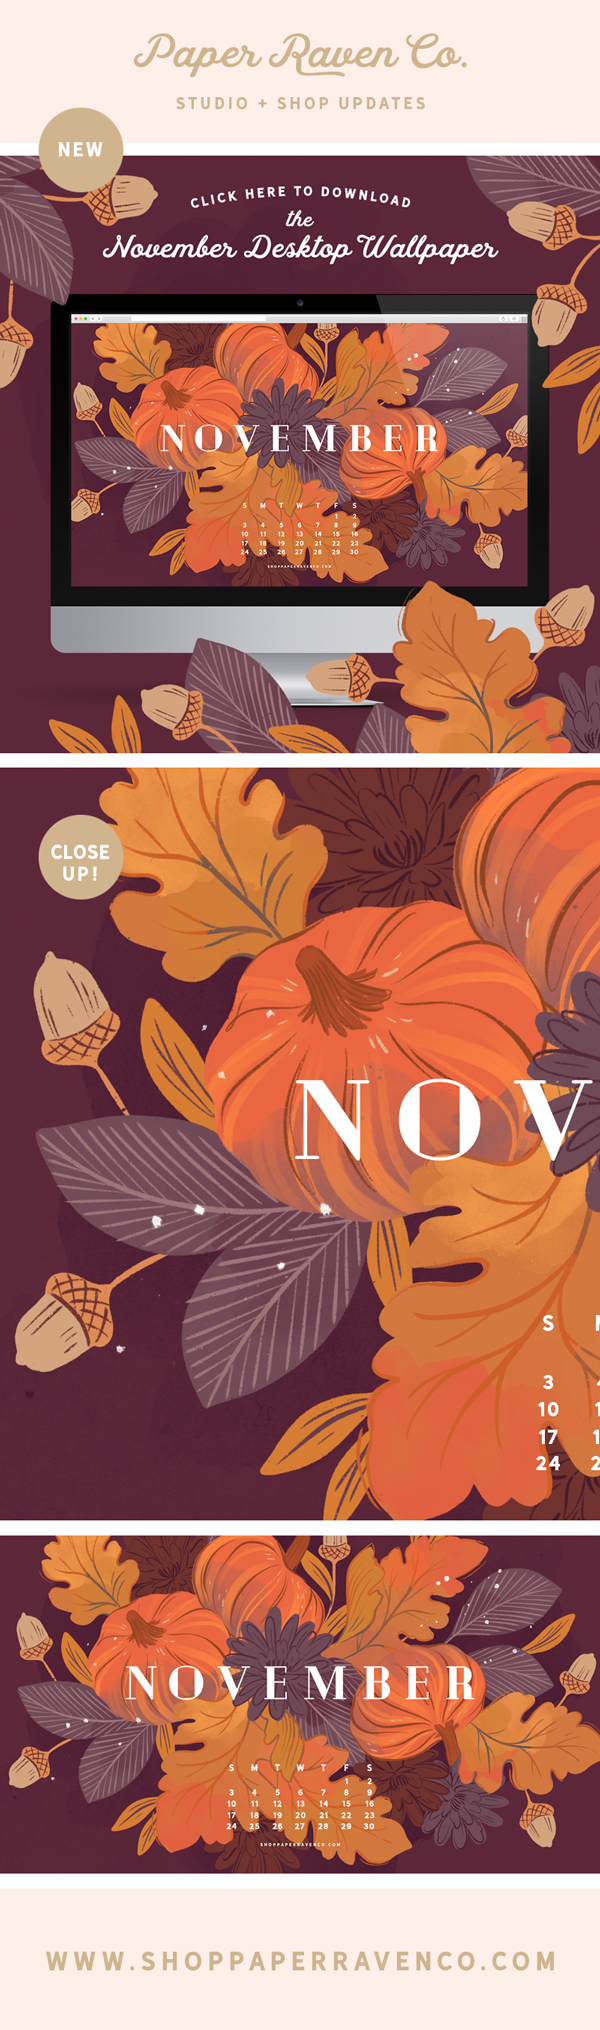 Free November 2018 Illustrated Desktop Wallpaper by Paper Raven Co. // www.ShopPaperRavenCo.com